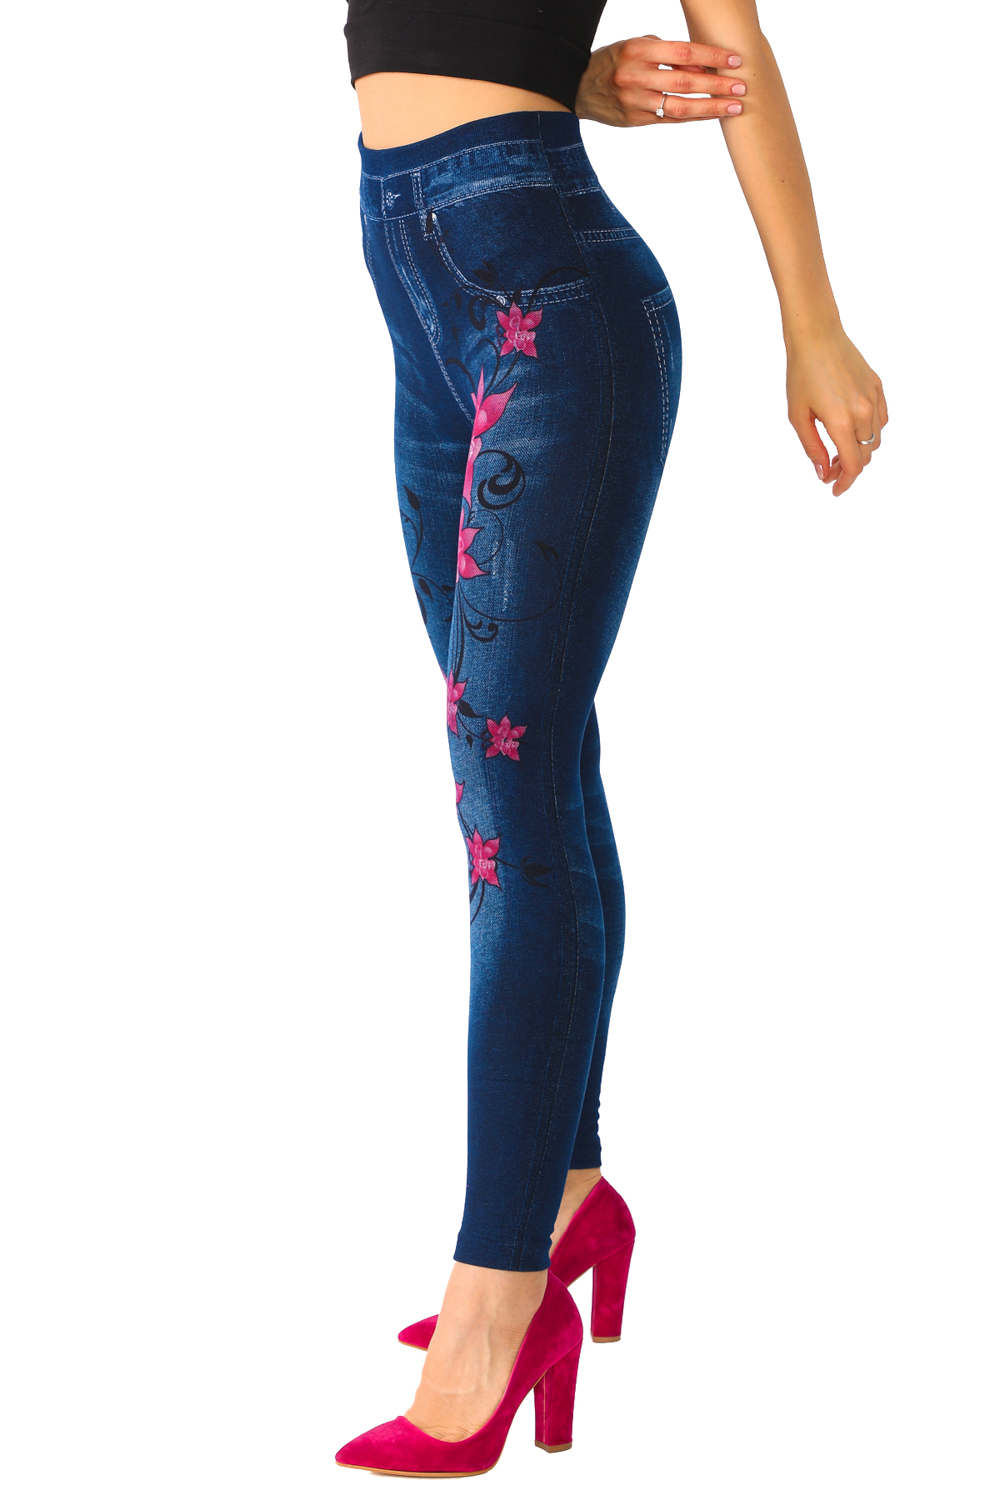 Summer Capri Jeans for Women High Waisted Slim Flower Printed Jean Denim  Pants Leggings 